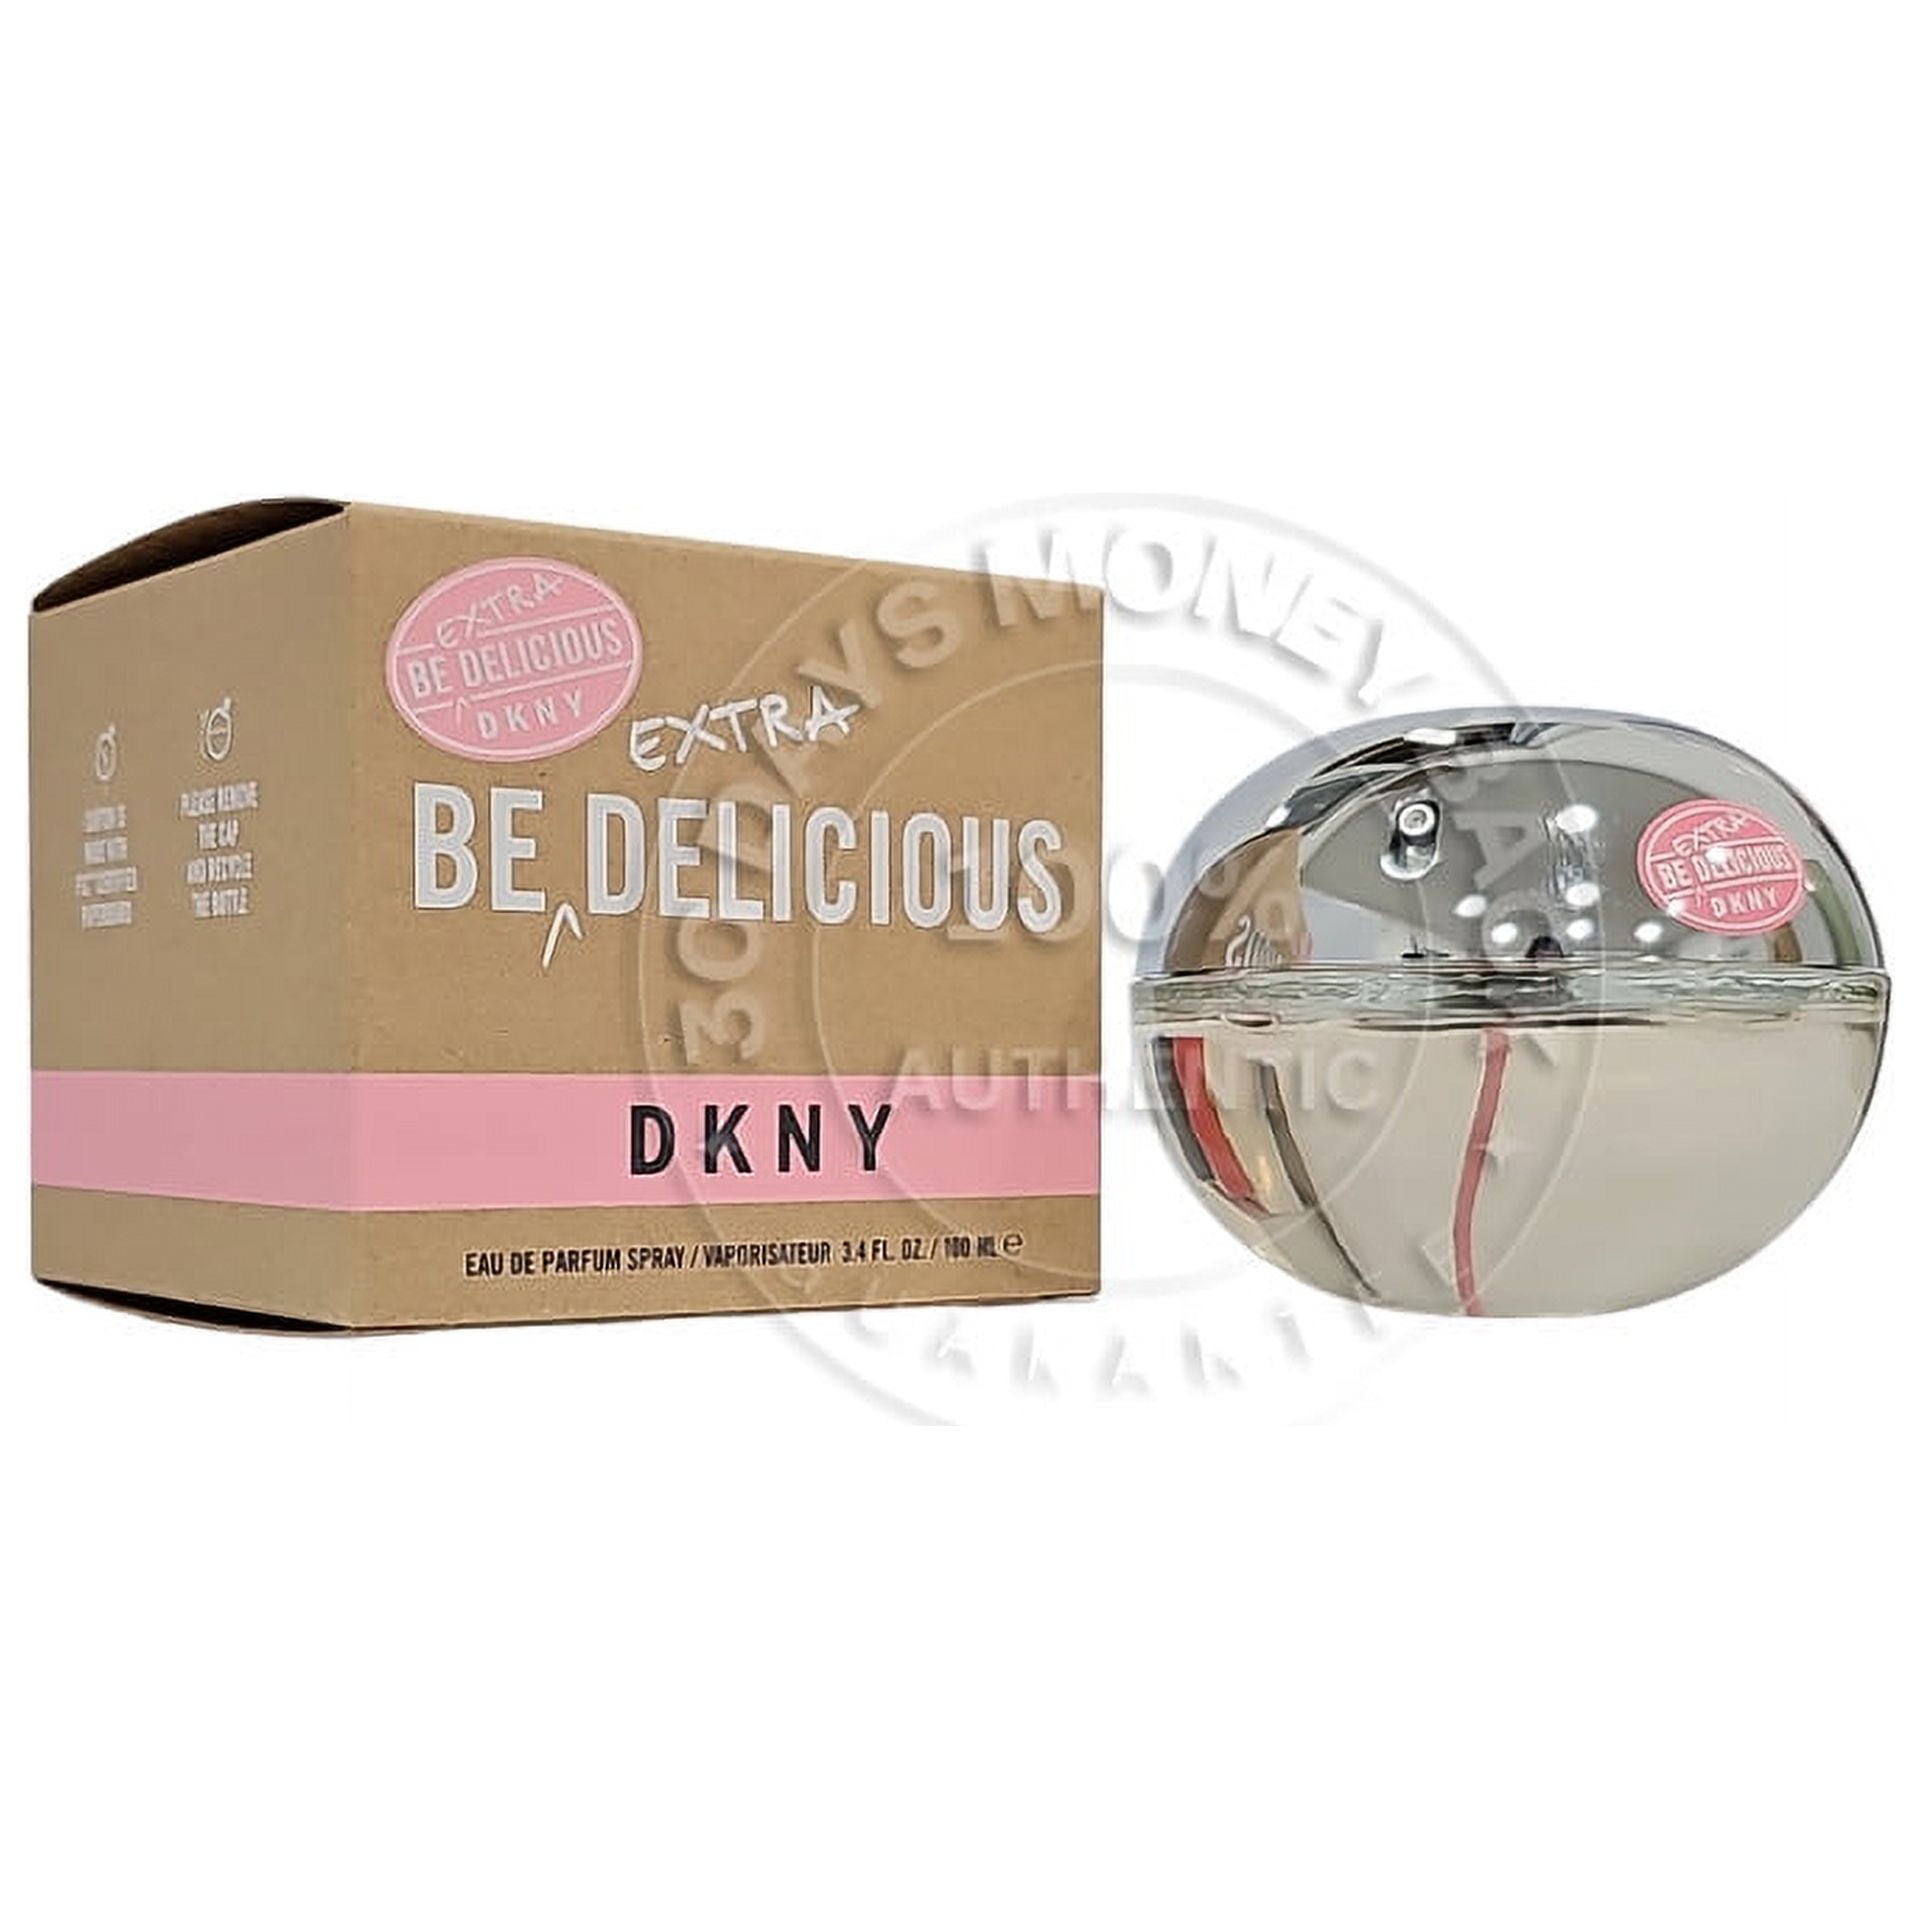 DKNY Be Extra Delicious Eau de Parfum 3.4 oz / 100 ml Spray - Walmart.com